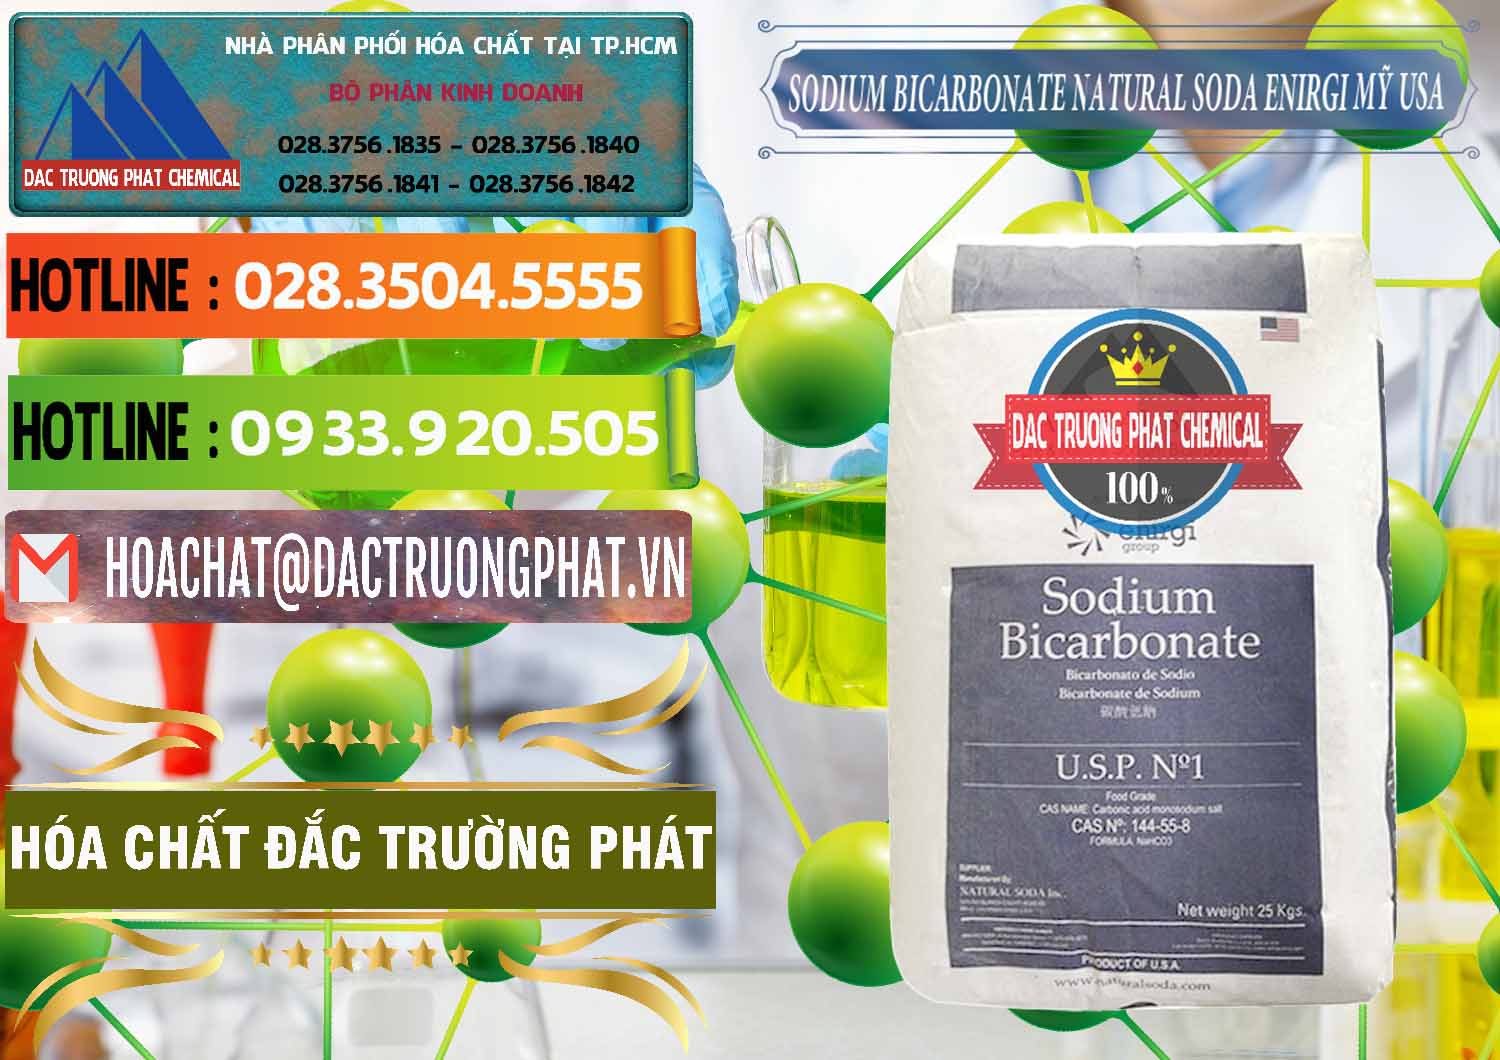 Nơi chuyên cung ứng _ bán Sodium Bicarbonate – Bicar NaHCO3 Food Grade Natural Soda Enirgi Mỹ USA - 0257 - Cty chuyên cung cấp _ kinh doanh hóa chất tại TP.HCM - cungcaphoachat.com.vn